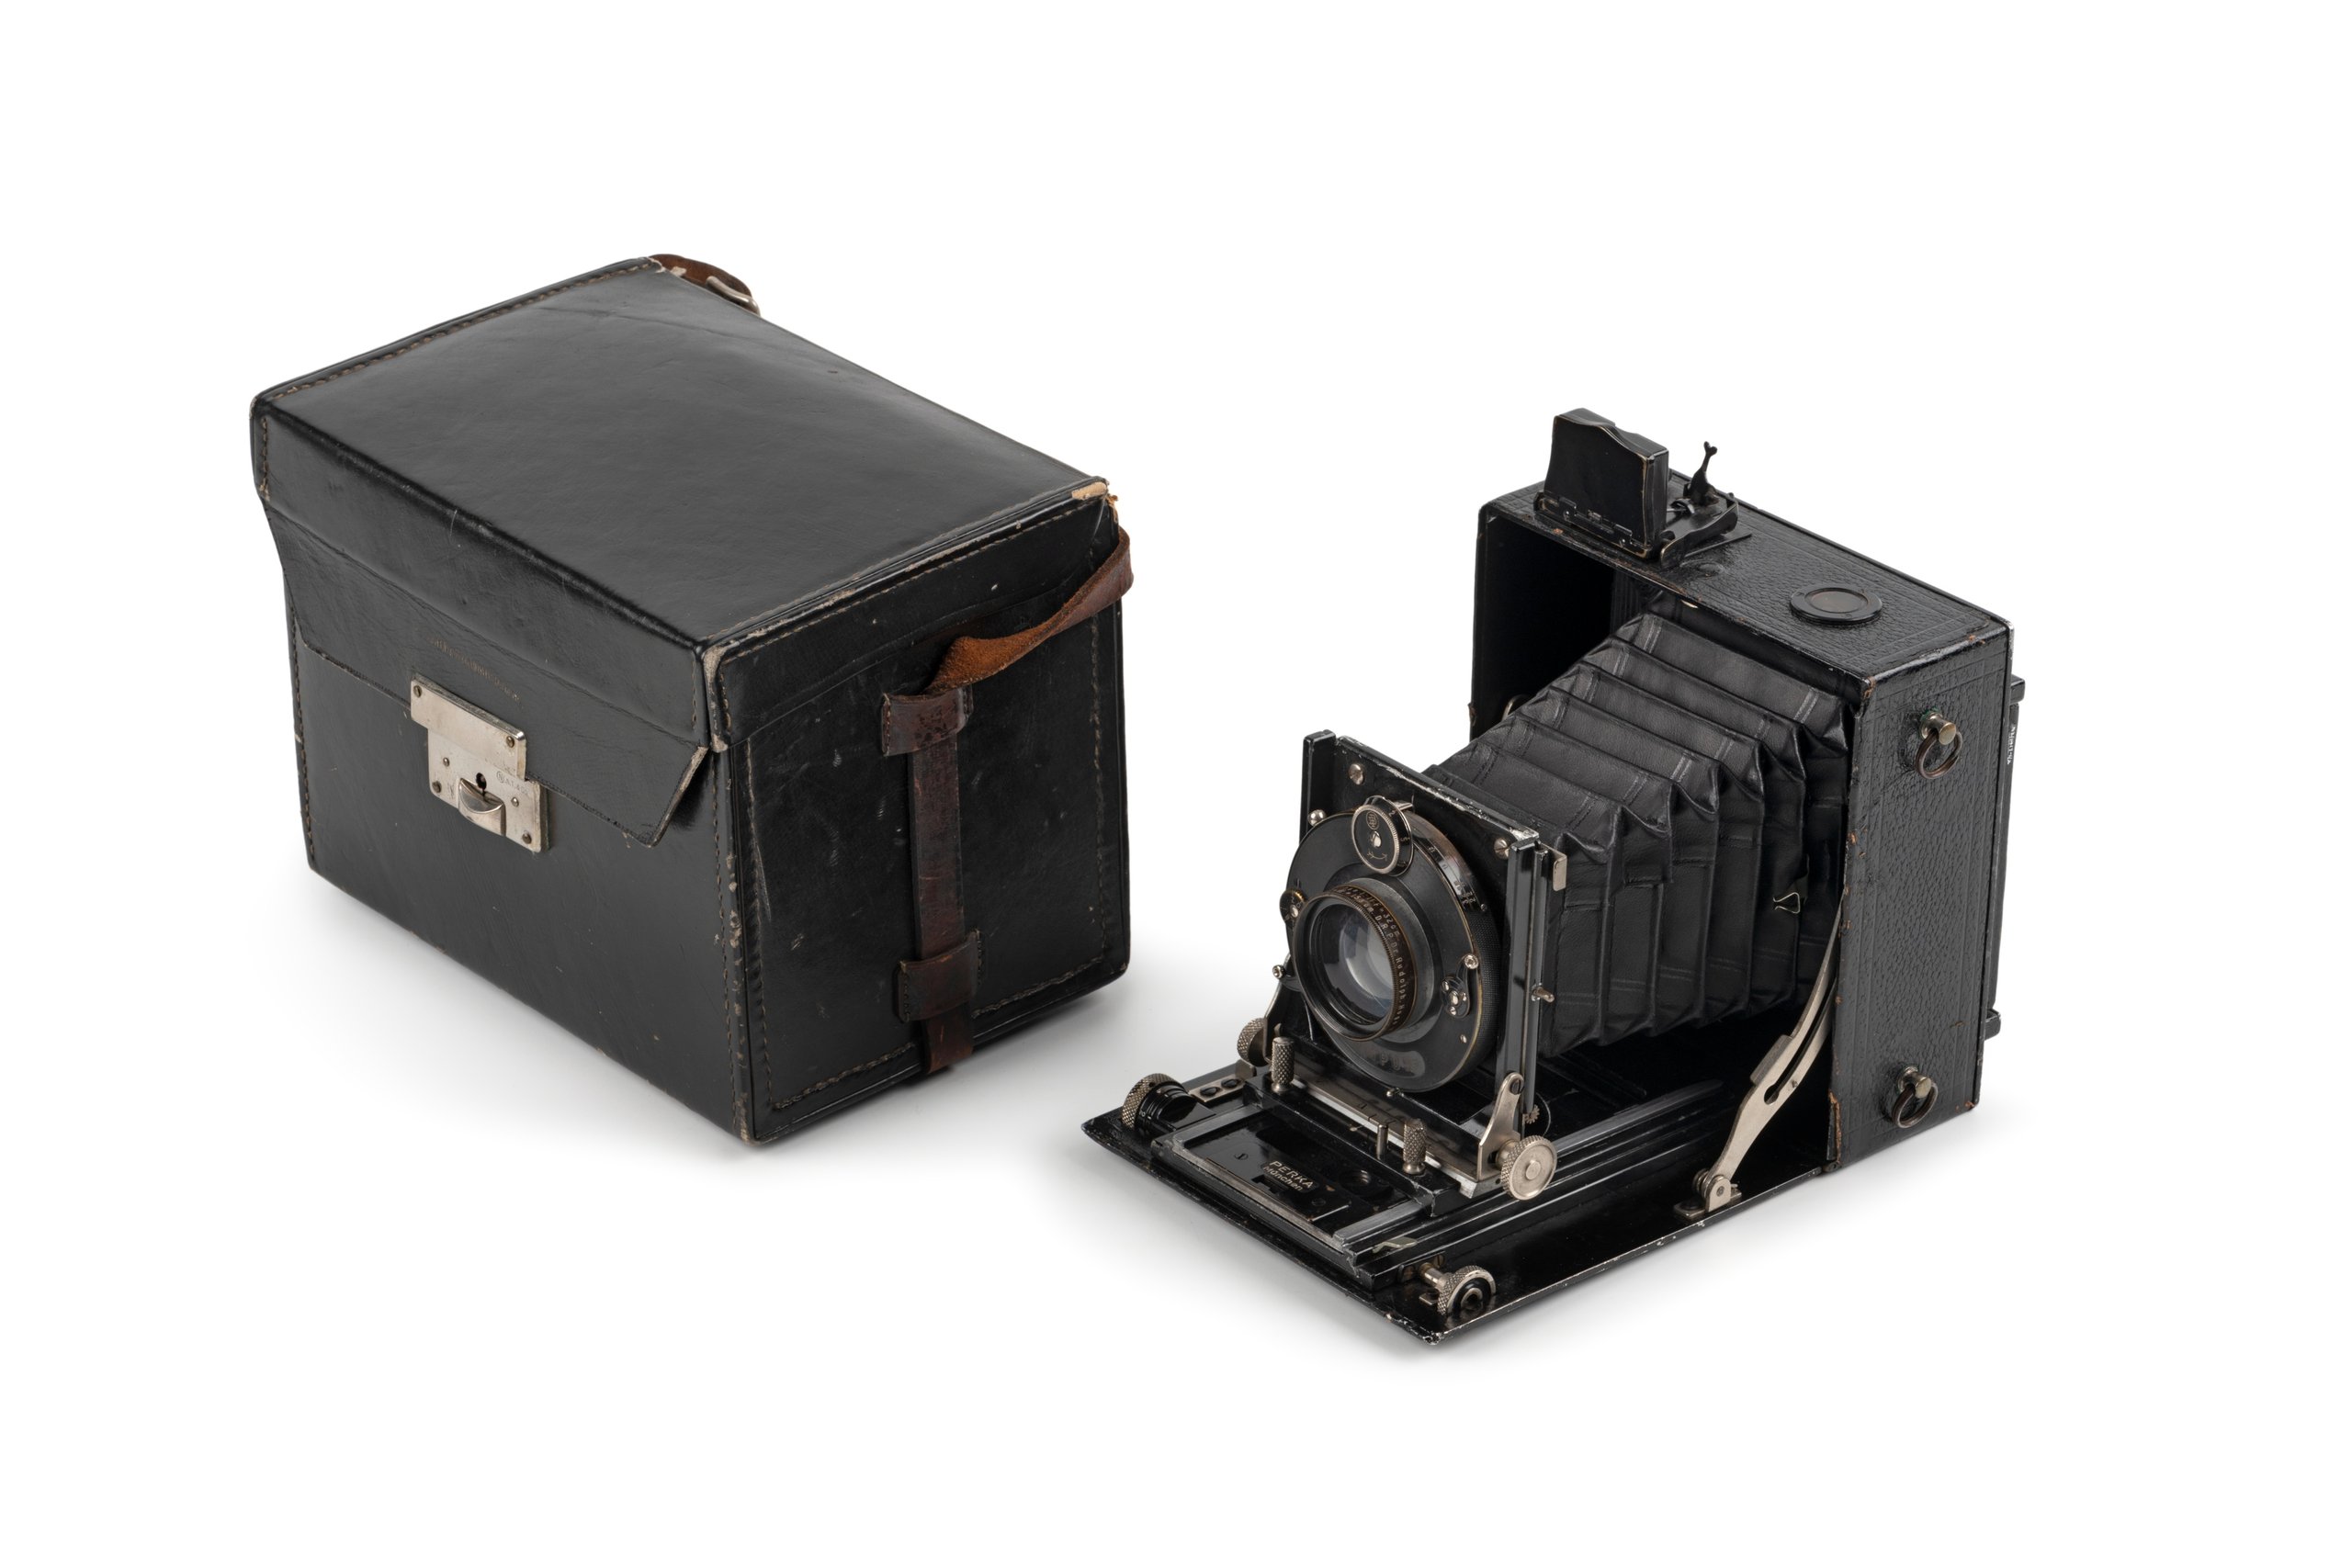 Linhof Satzplasmat camera and accessories